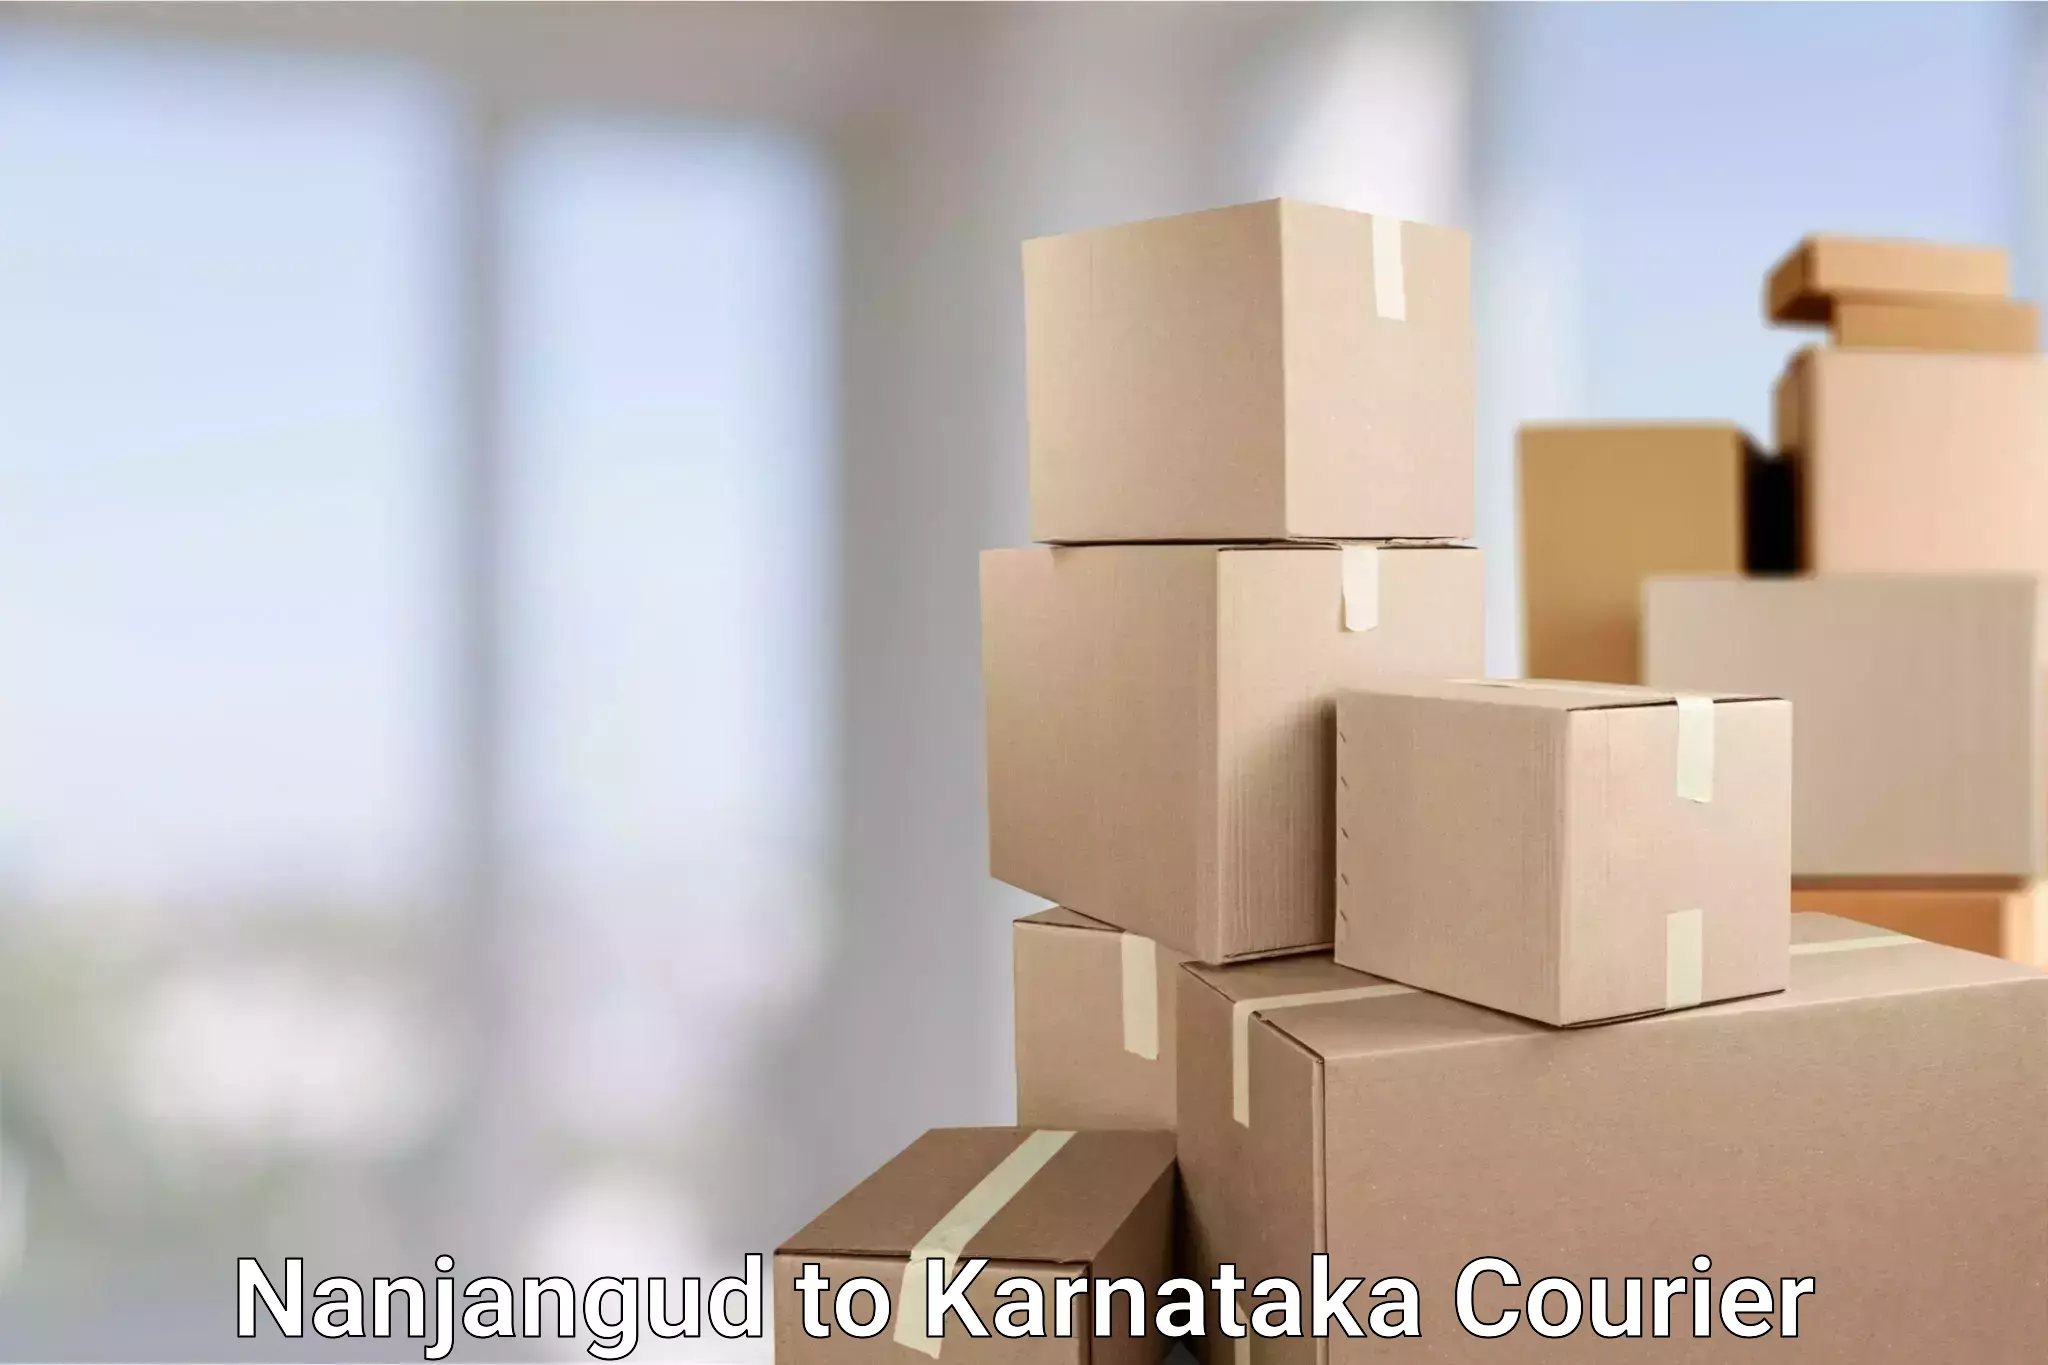 Global shipping networks Nanjangud to Karkala